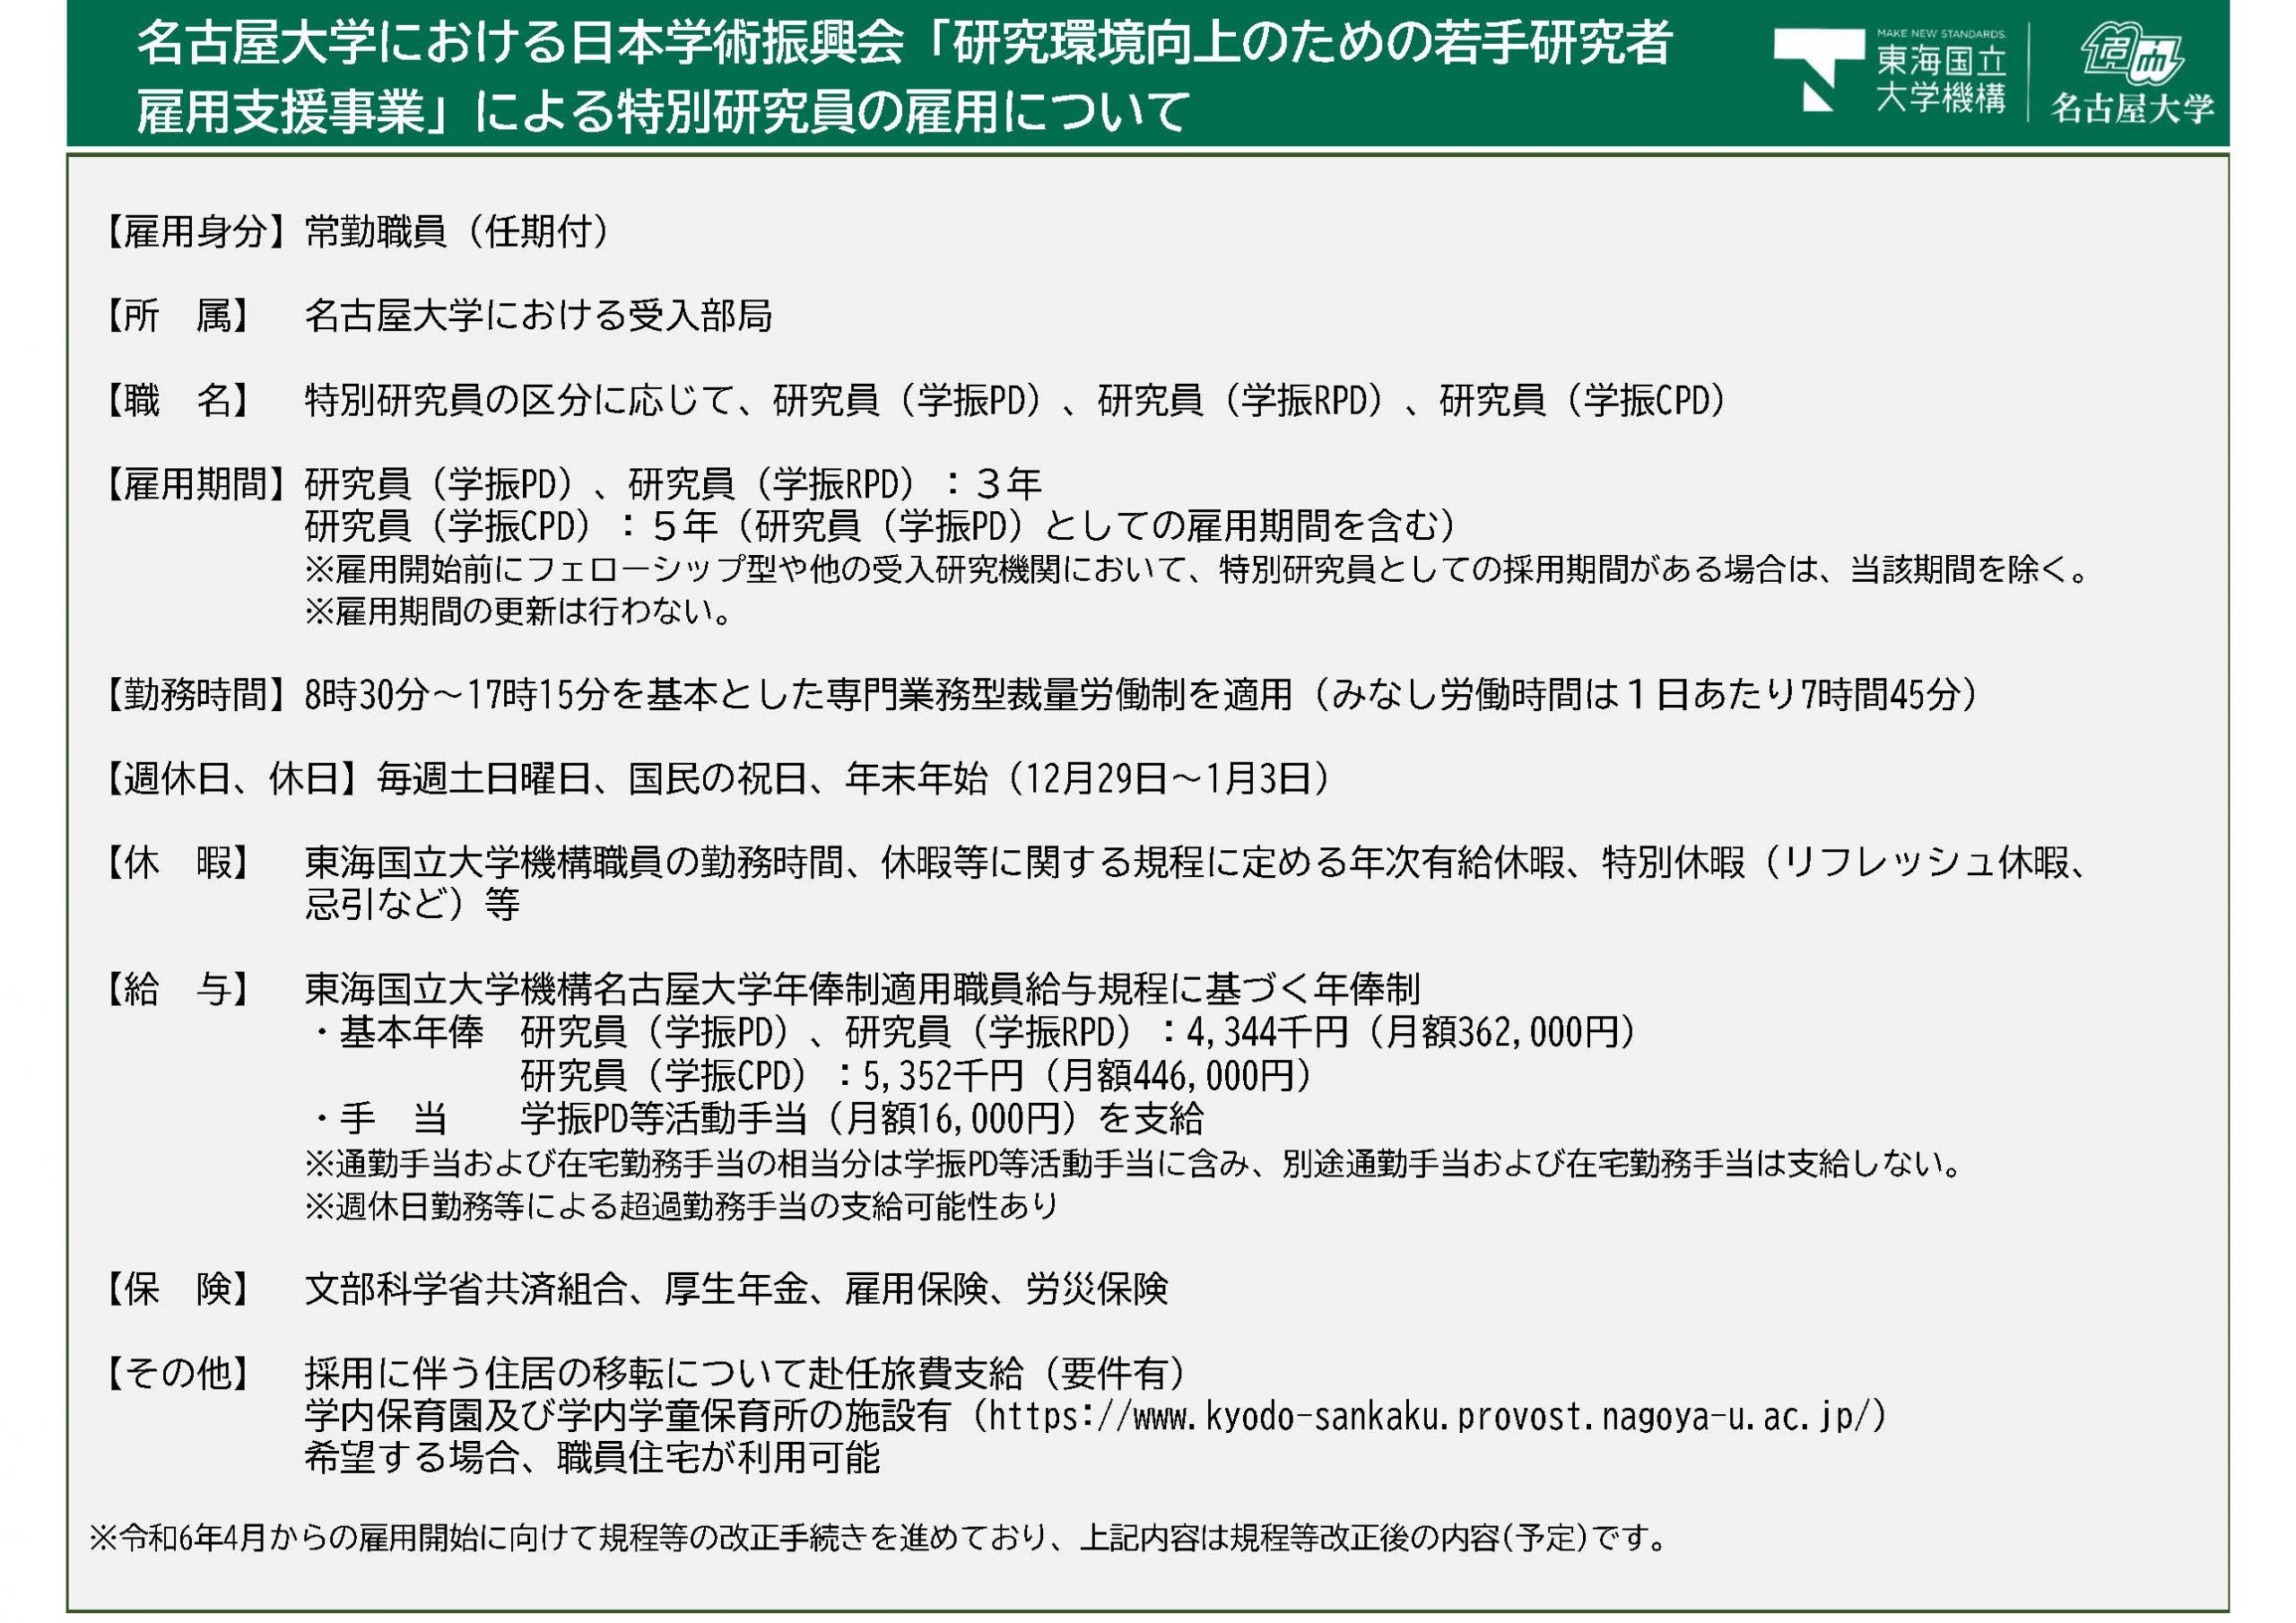 名古屋大学雇用条件（規定改正手続き中）